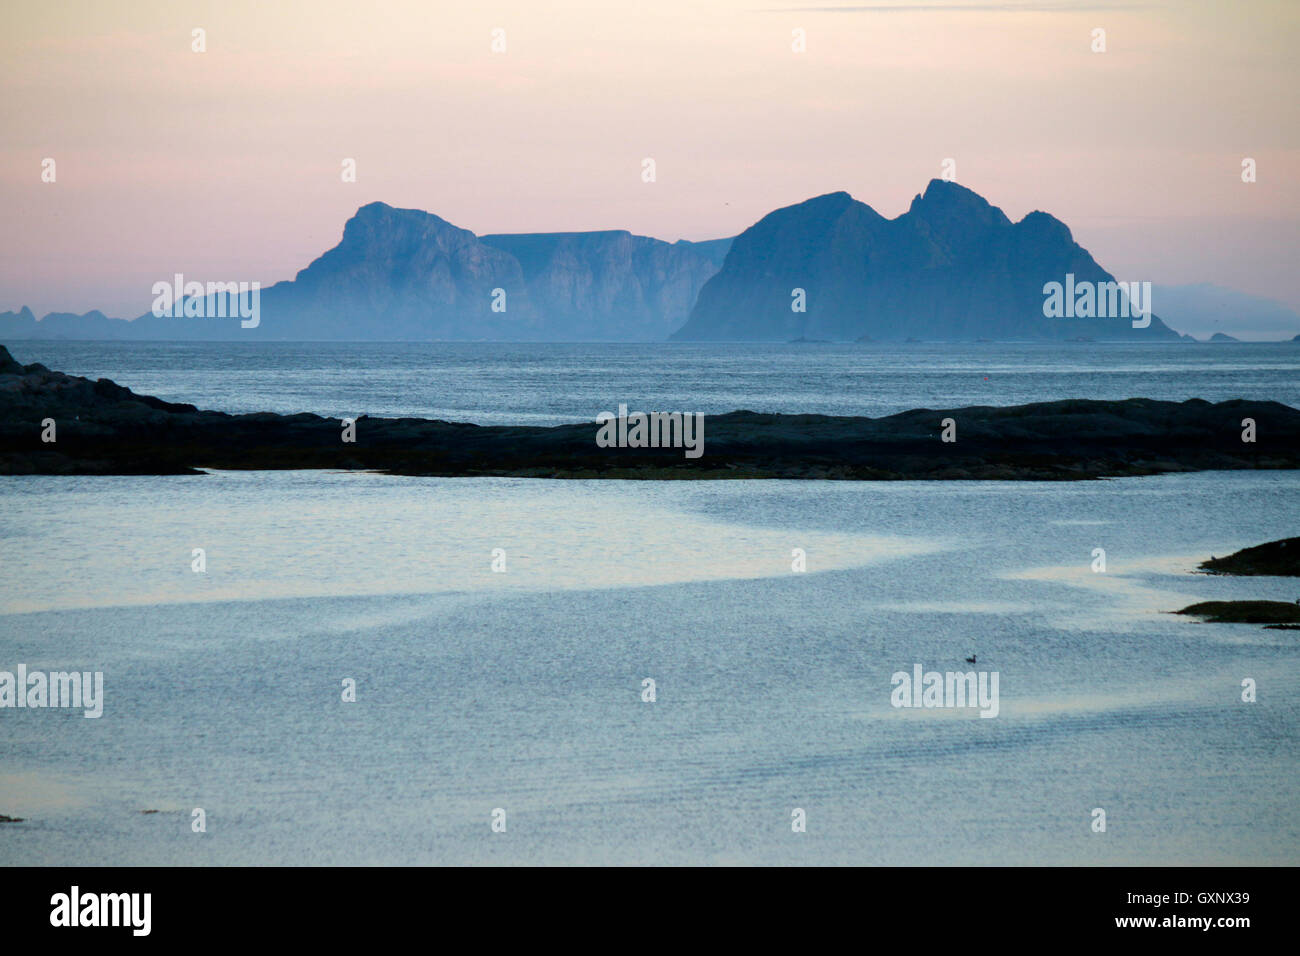 Impressionen: Mitternachtssonne, im Hintergrund die Inseln Sorland und Rost, Lofoten, Norwegen. Stock Photo